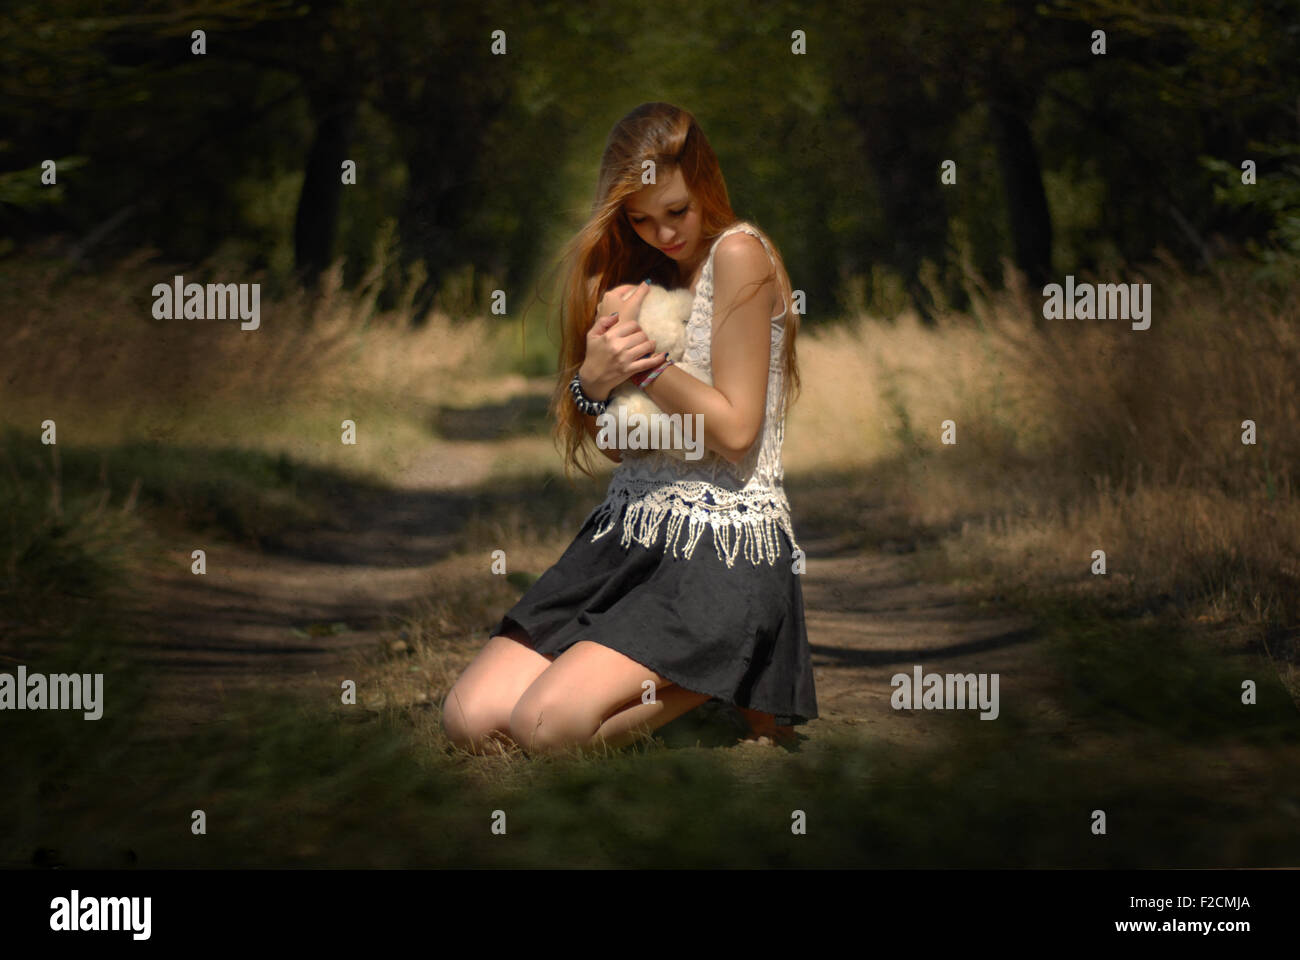 Anima persa e l'innocenza - ragazza abbracciando orsacchiotto nella foresta di piangere ragazza nella foresta con Teddy bear bella luce Foto Stock